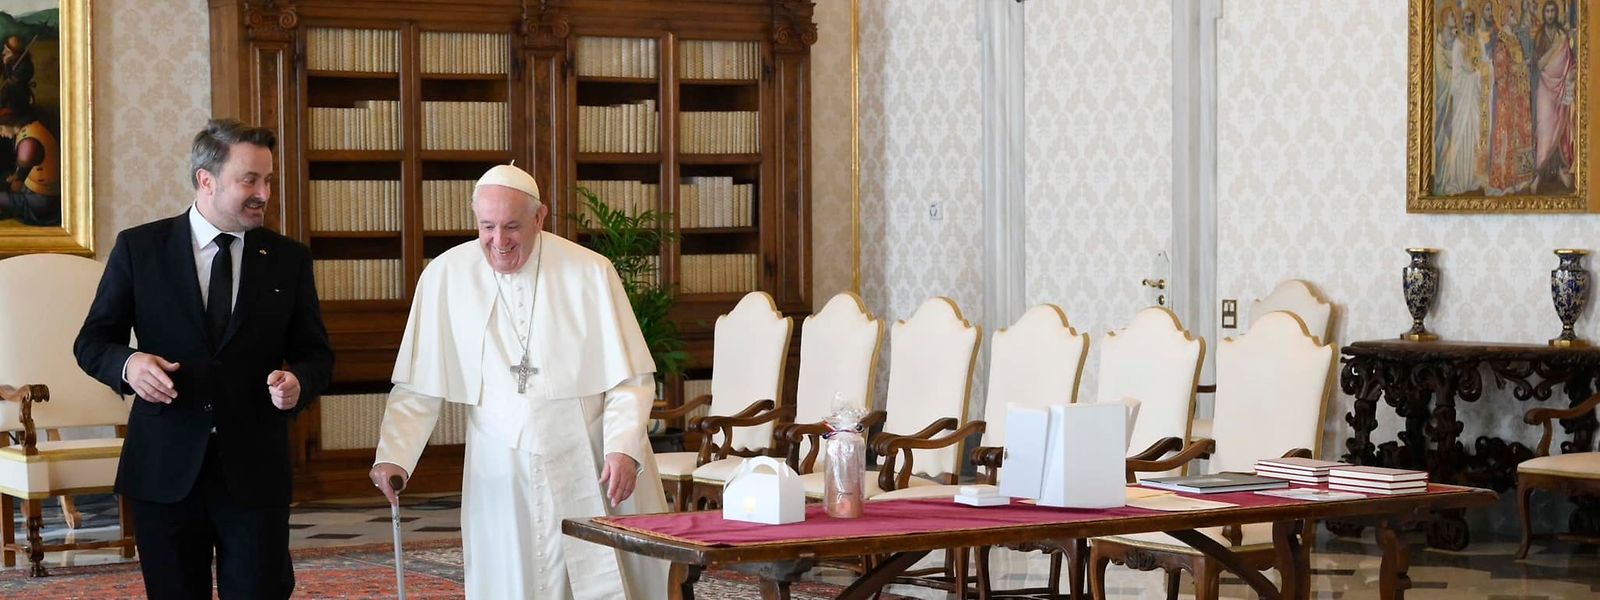 Das Treffen zwischen Xavier Bettel (l.) und Papst Franziskus im Vatikan sei „herzlich" gewesen.